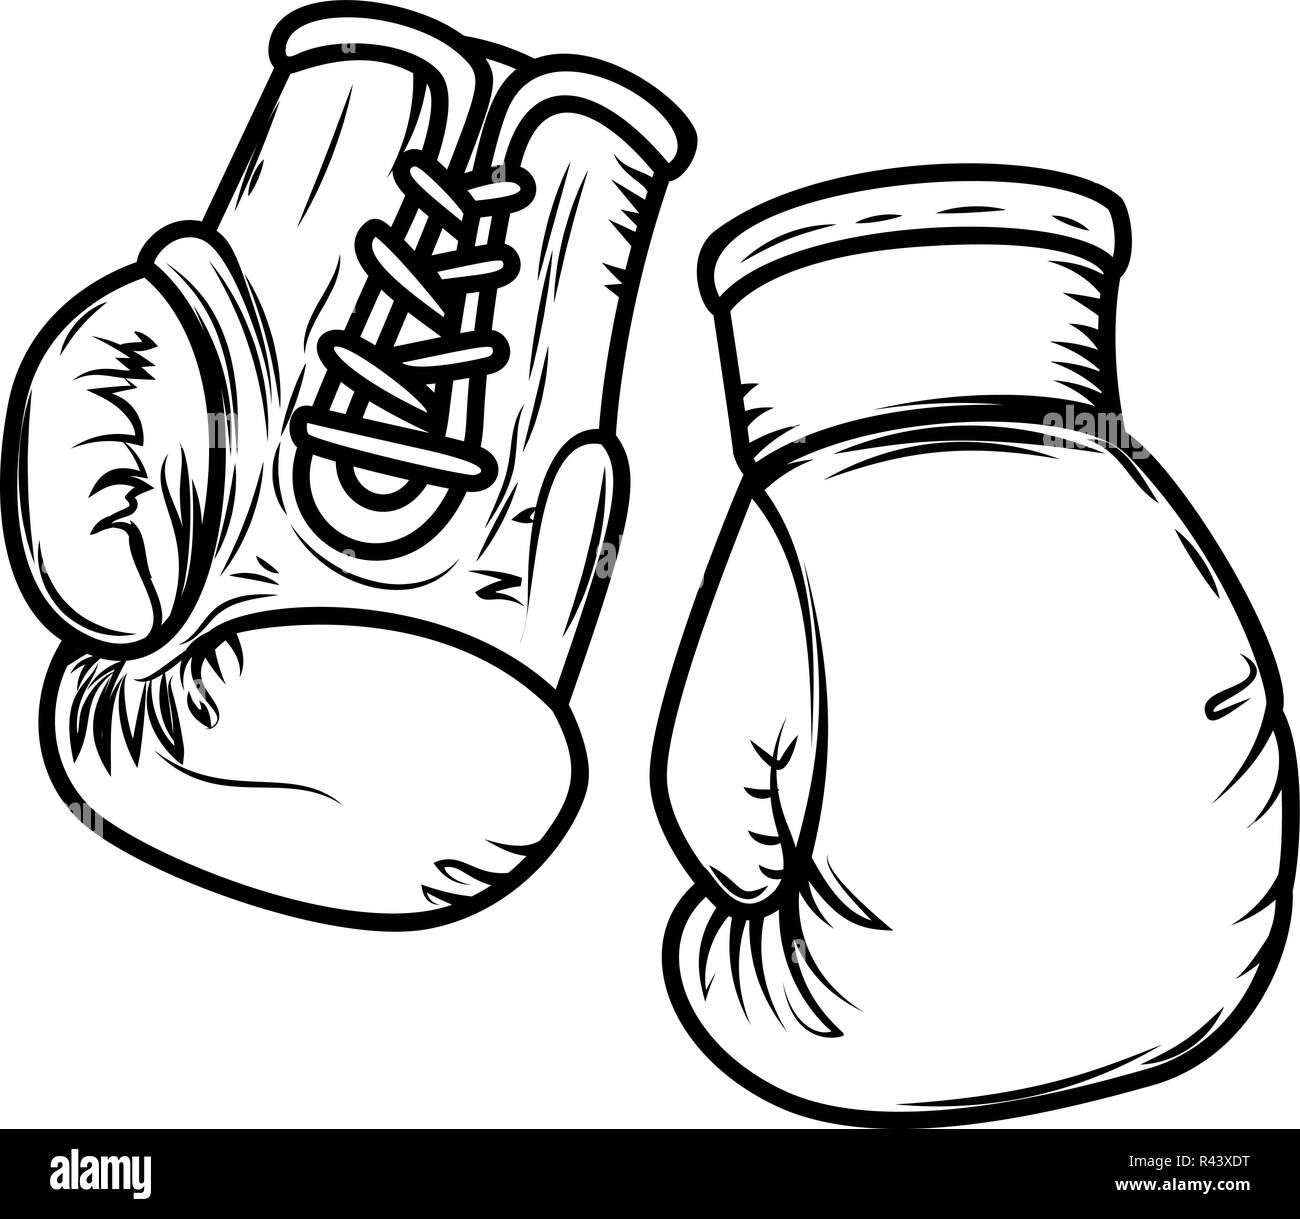 Illustration of boxing gloves. Design elements for logo, label, sign, menu.  Vector image Stock Vector Image & Art - Alamy